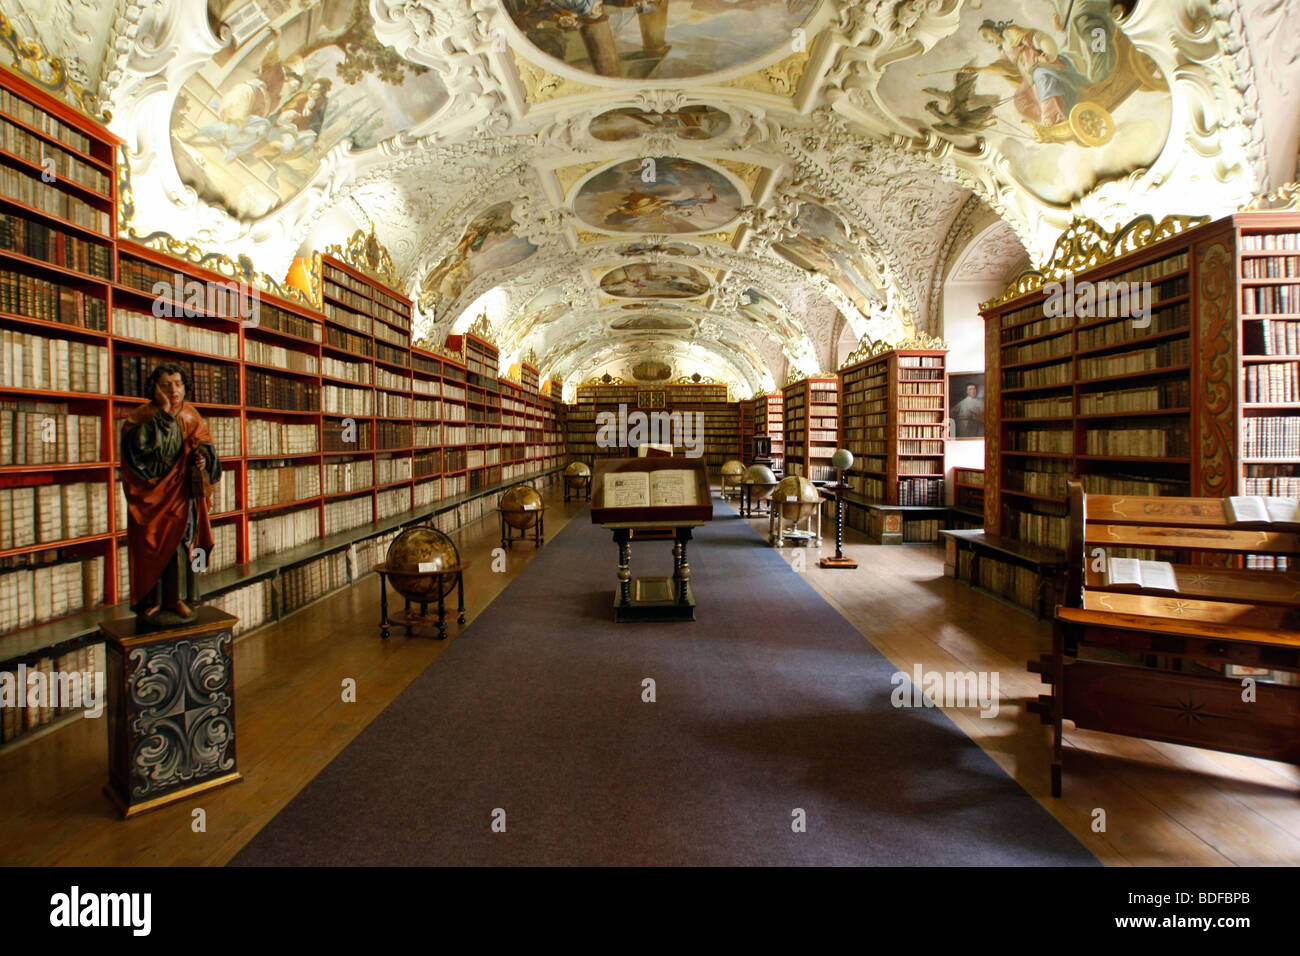 Bibliothèque du monastère de Strahov, Prague, Bohême, République tchèque, Europe de l'est Banque D'Images